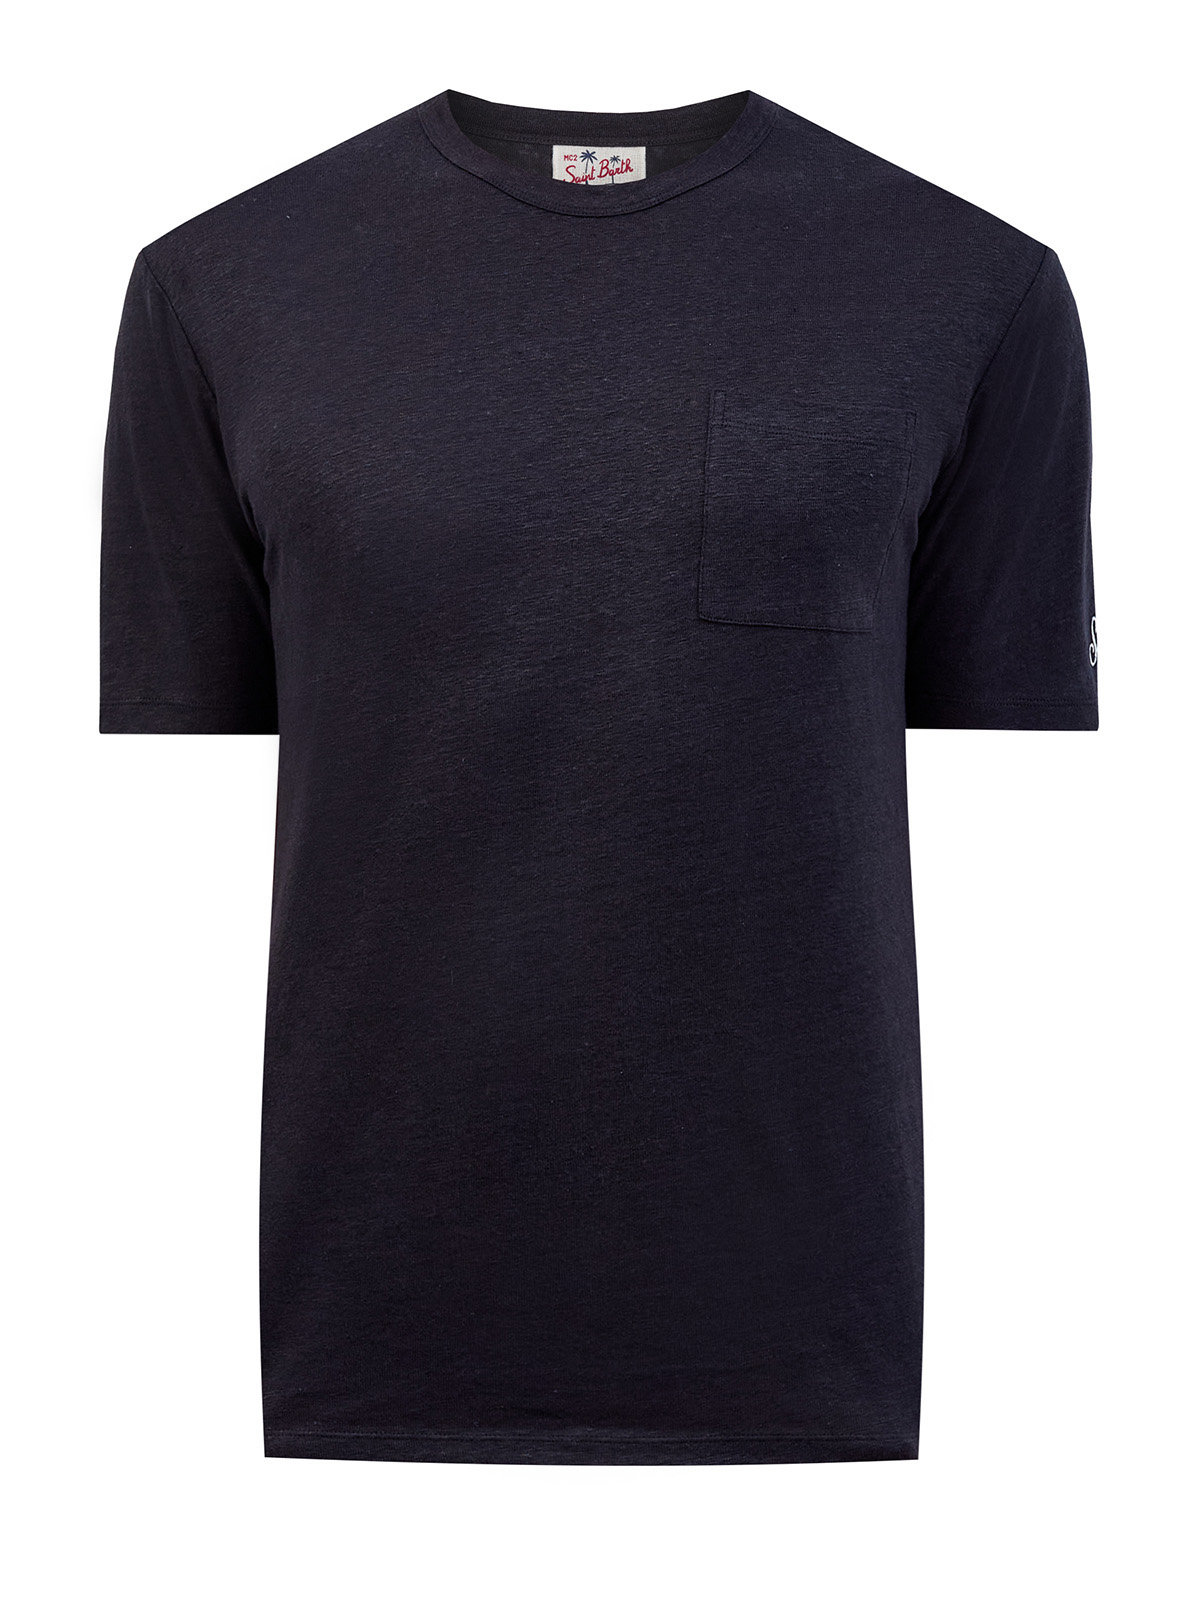 Однотонная футболка из льняной ткани с контрастной вышивкой MC2 SAINT BARTH, цвет черный, размер M;L;XL;2XL;3XL